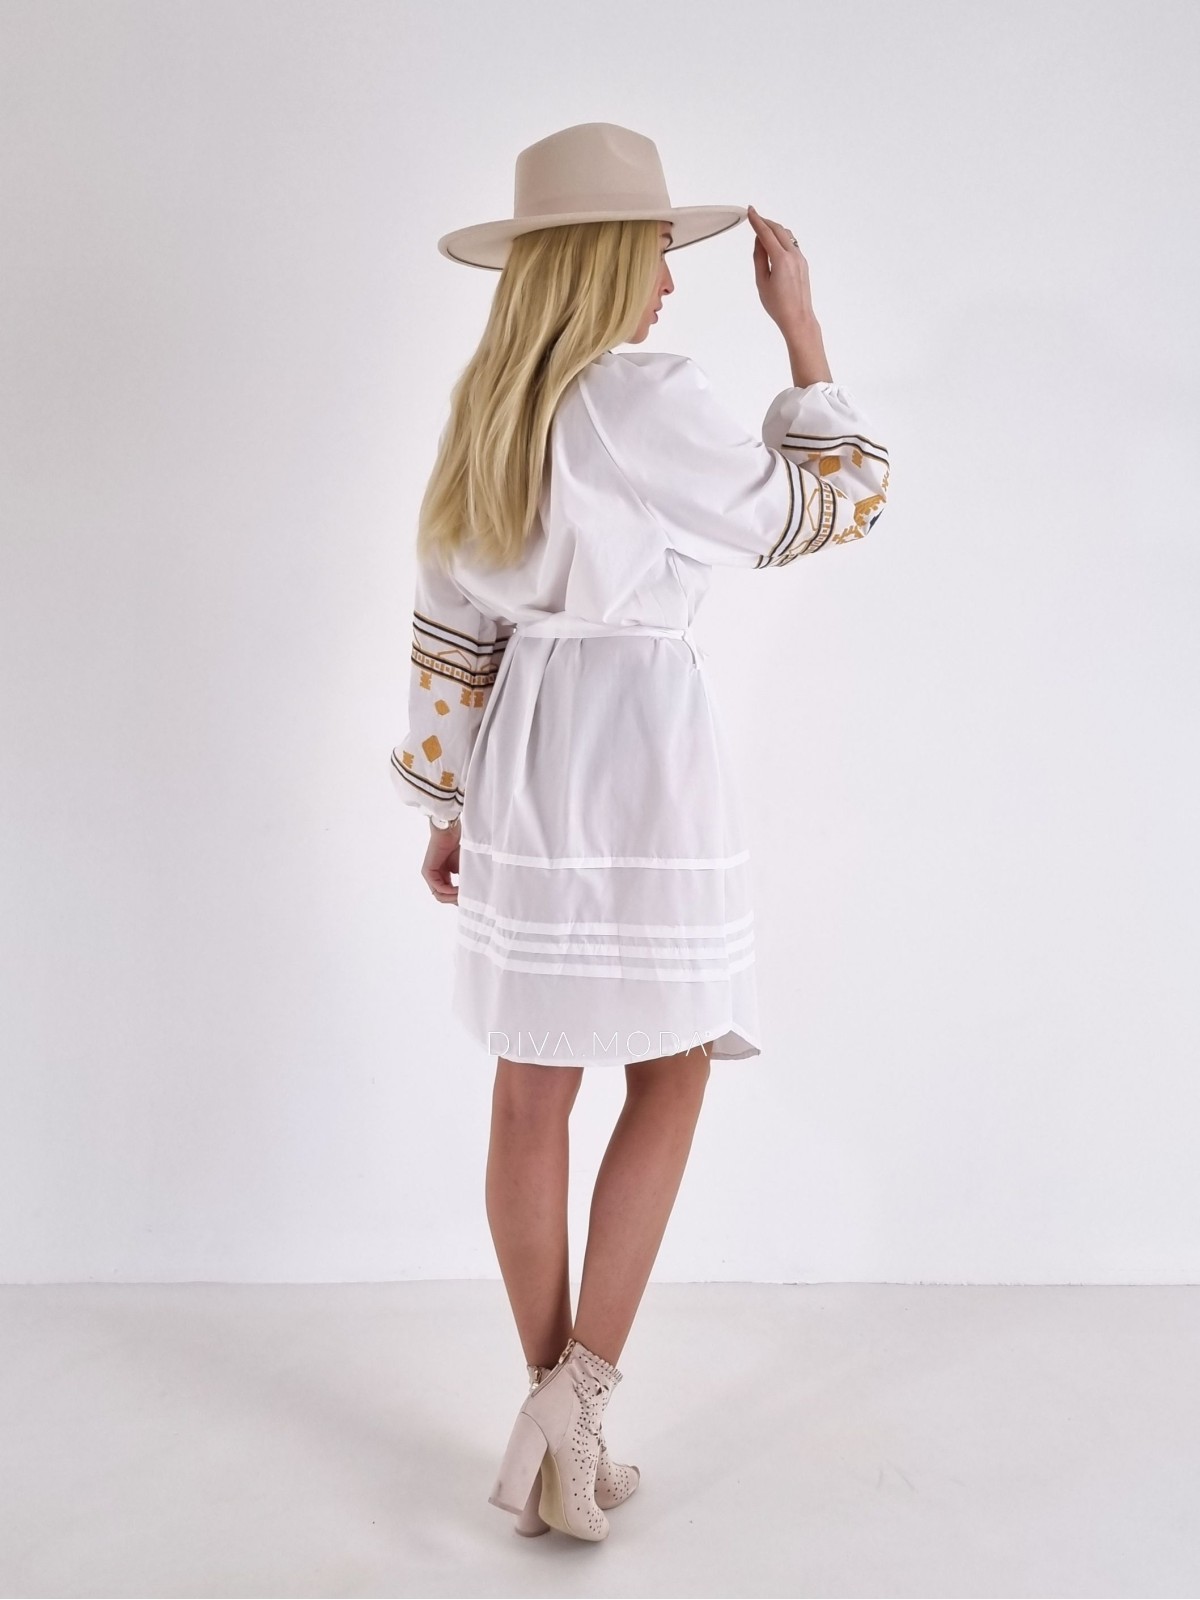 Šaty s puf rukávem Etno bílé A 123